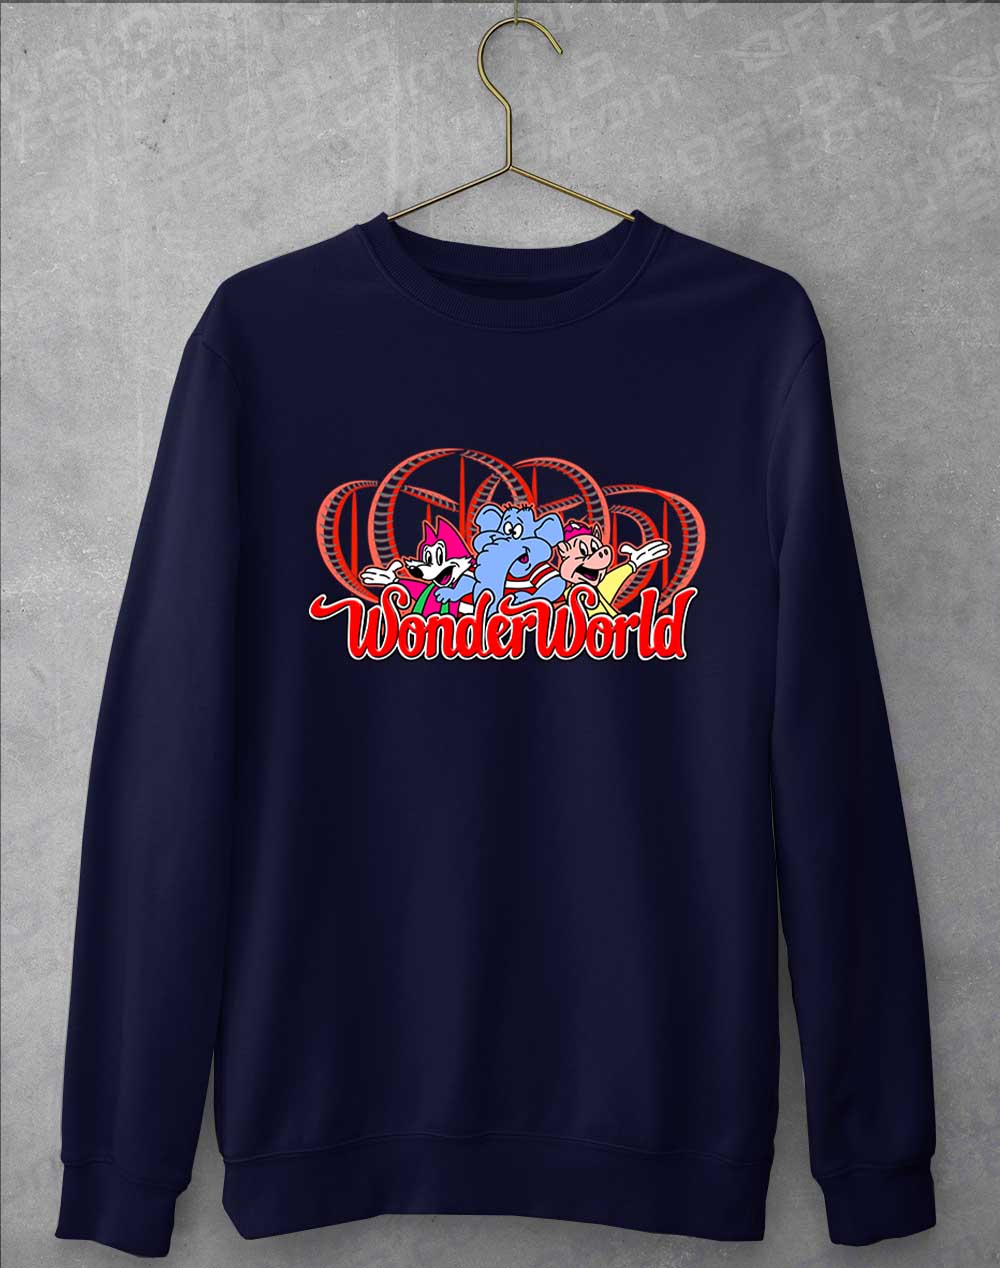 Oxford Navy - WonderWorld Sweatshirt